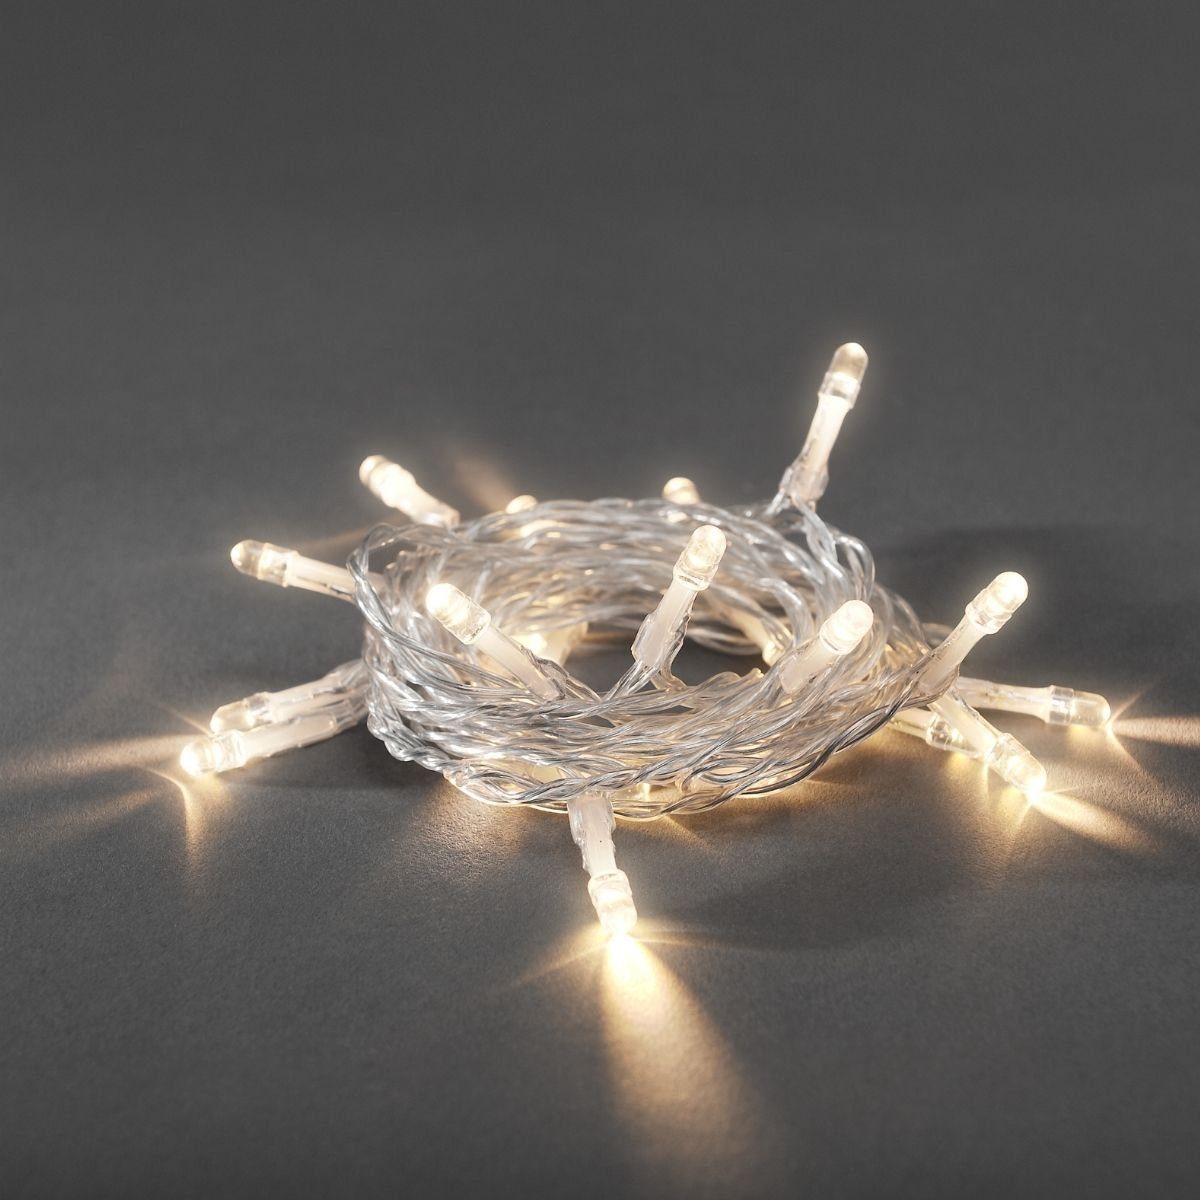 KONSTSMIDE LED-Lichterkette »LED Lichterkette 20 warmweiße LED L: 2,85m  Timer an/aus Schalter transp. Kabel«, 20-flammig online kaufen | OTTO